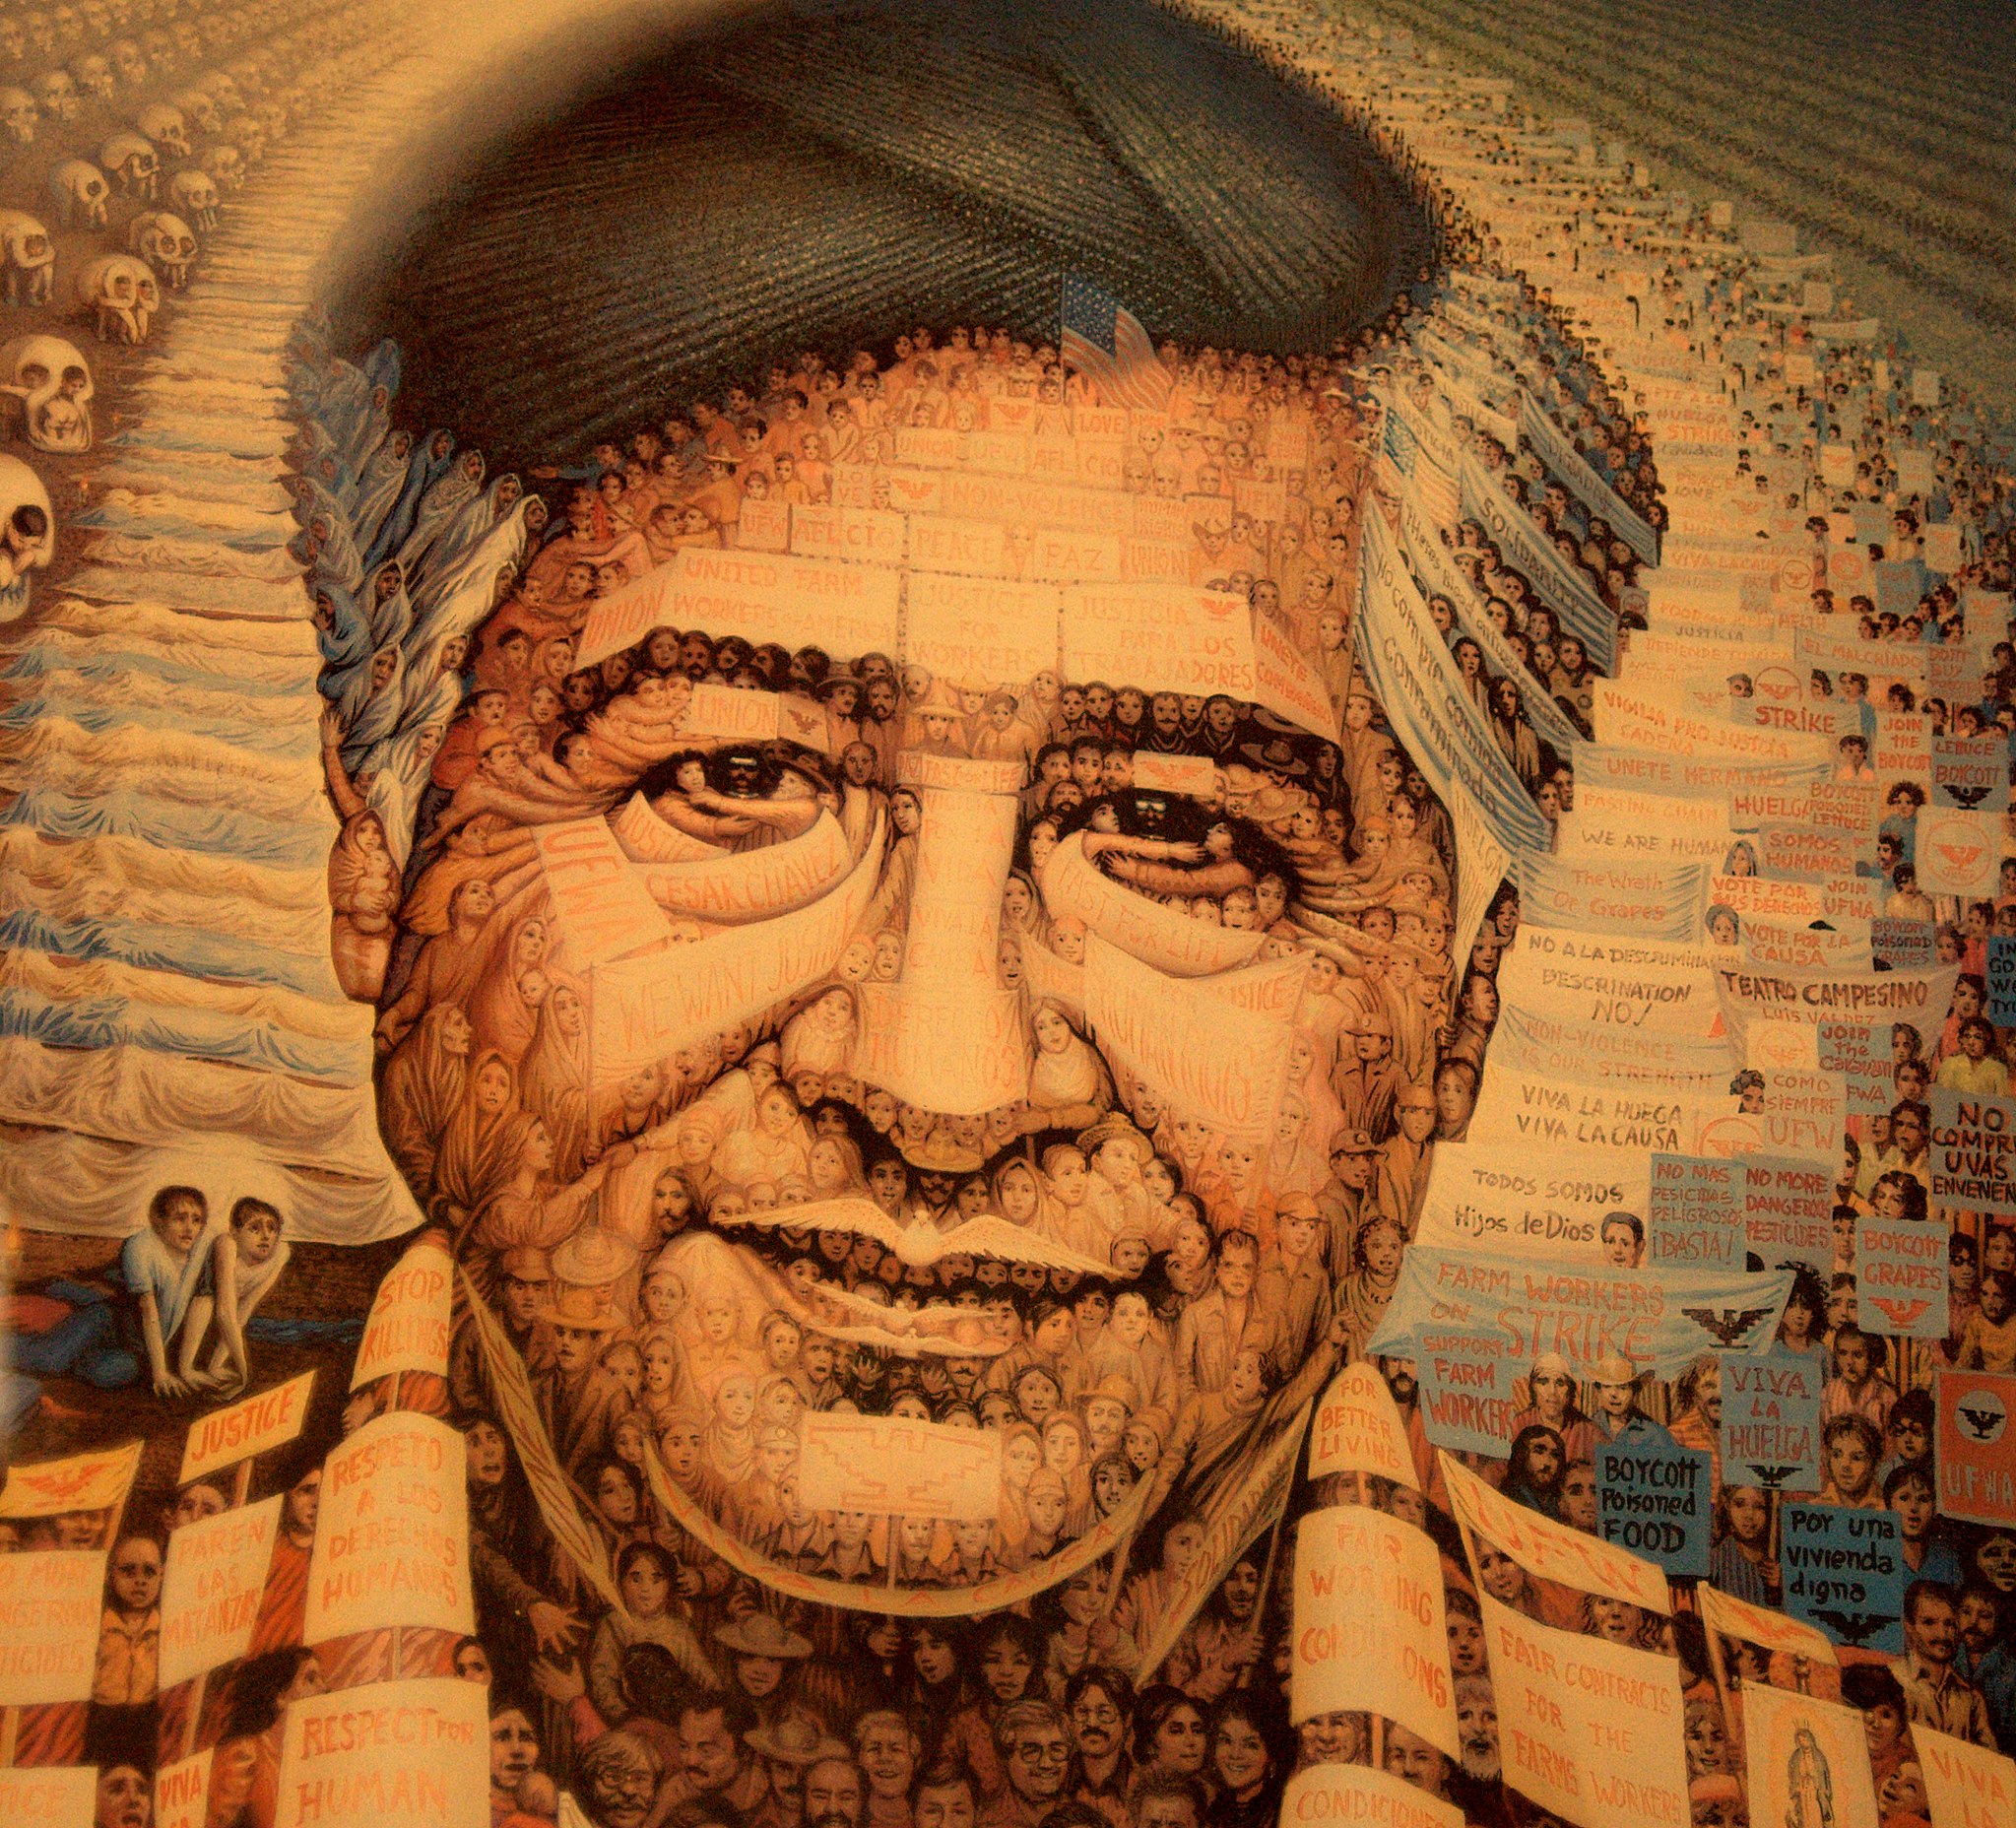 Marzo 31 Nace César Chávez, defensor de los migrantes